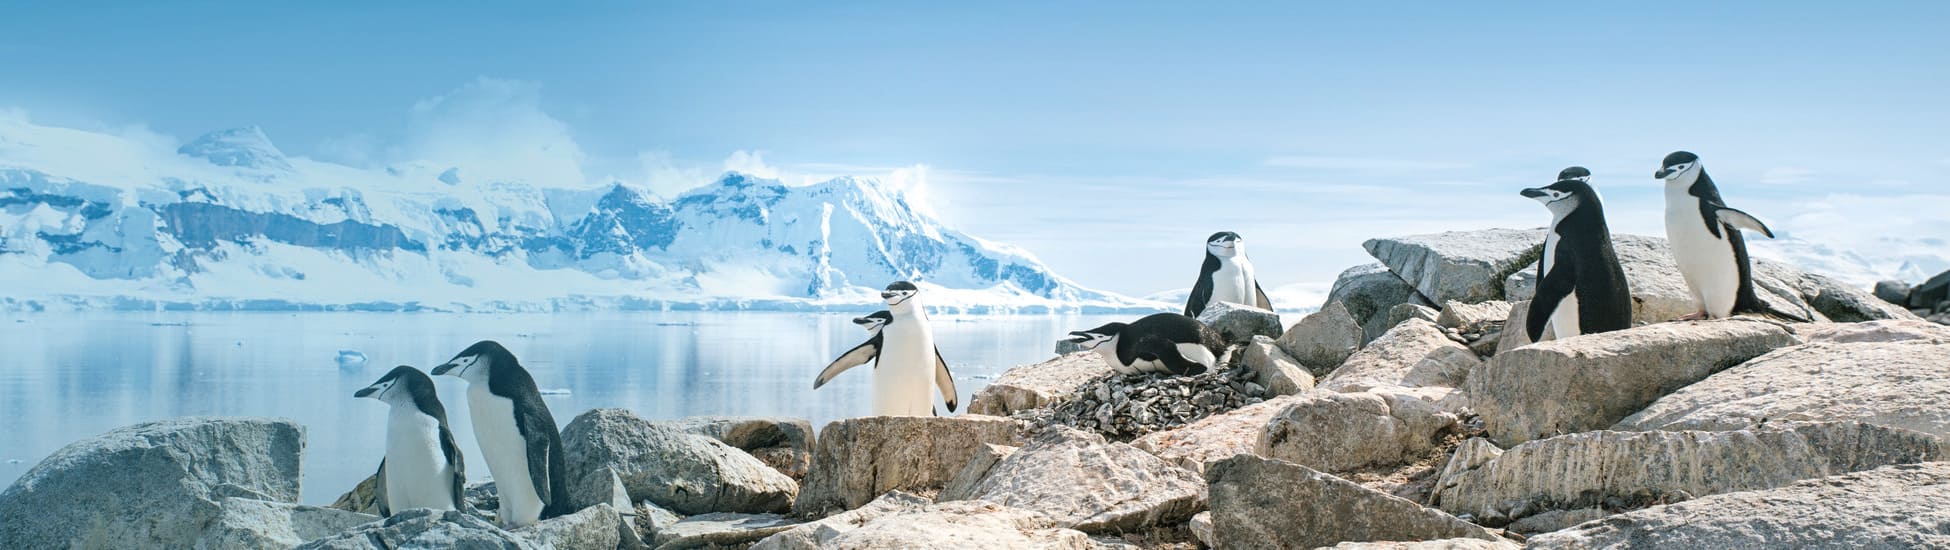 Континент Антарктида - мир айсбергов и пингвинов